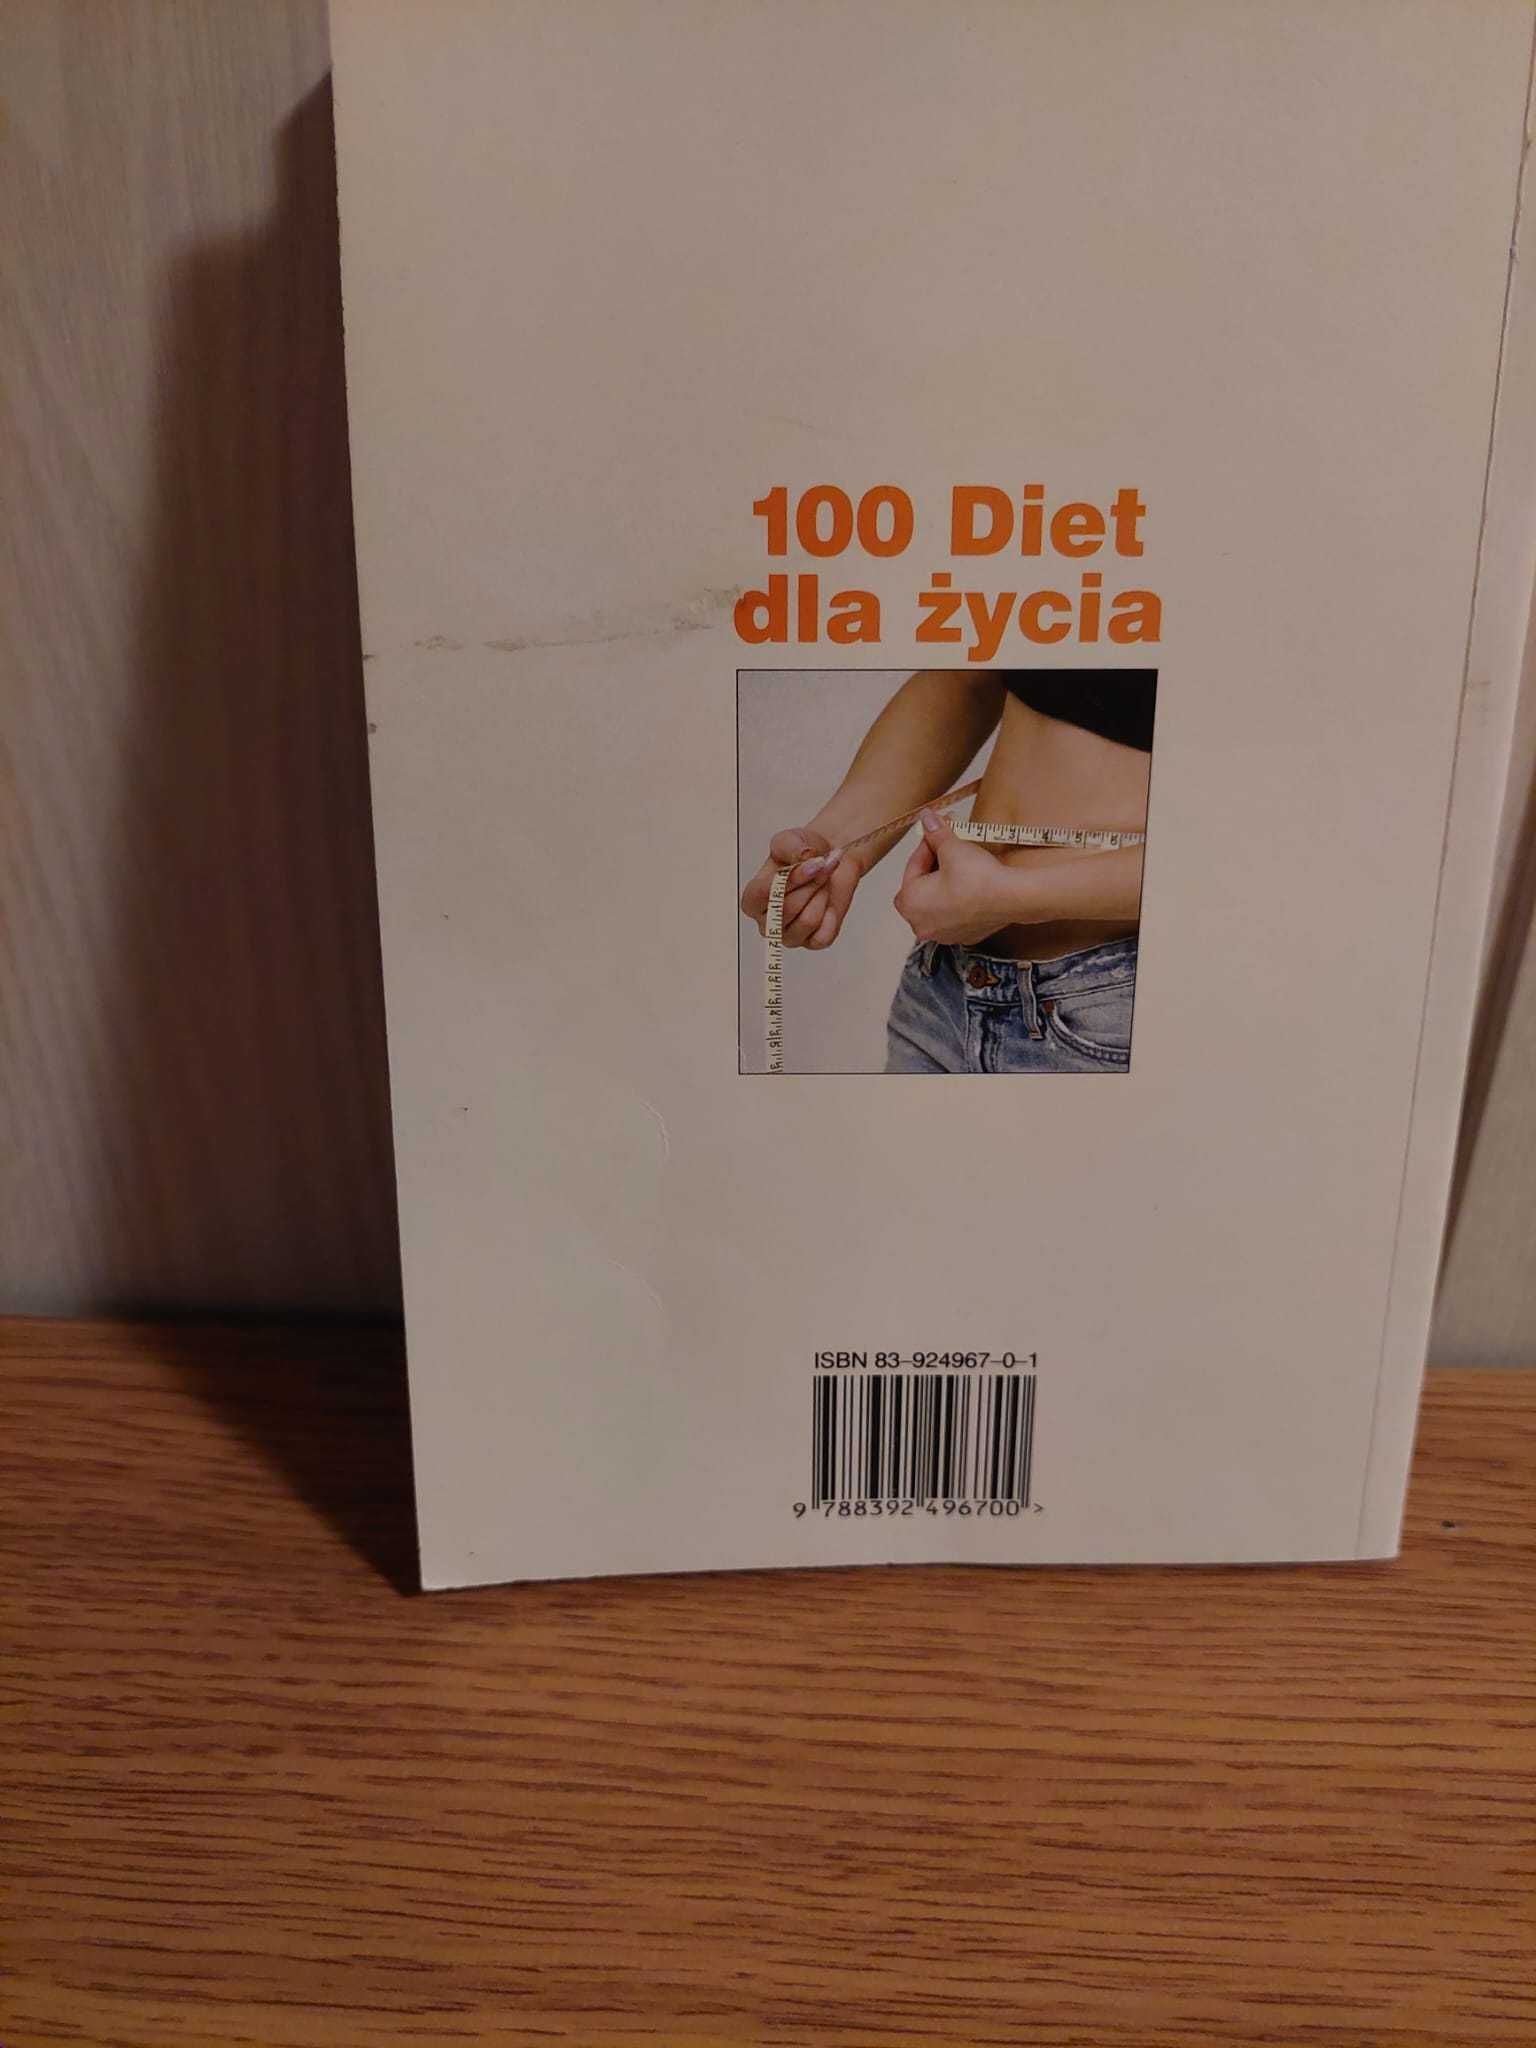 100 diet dla życia - książka.